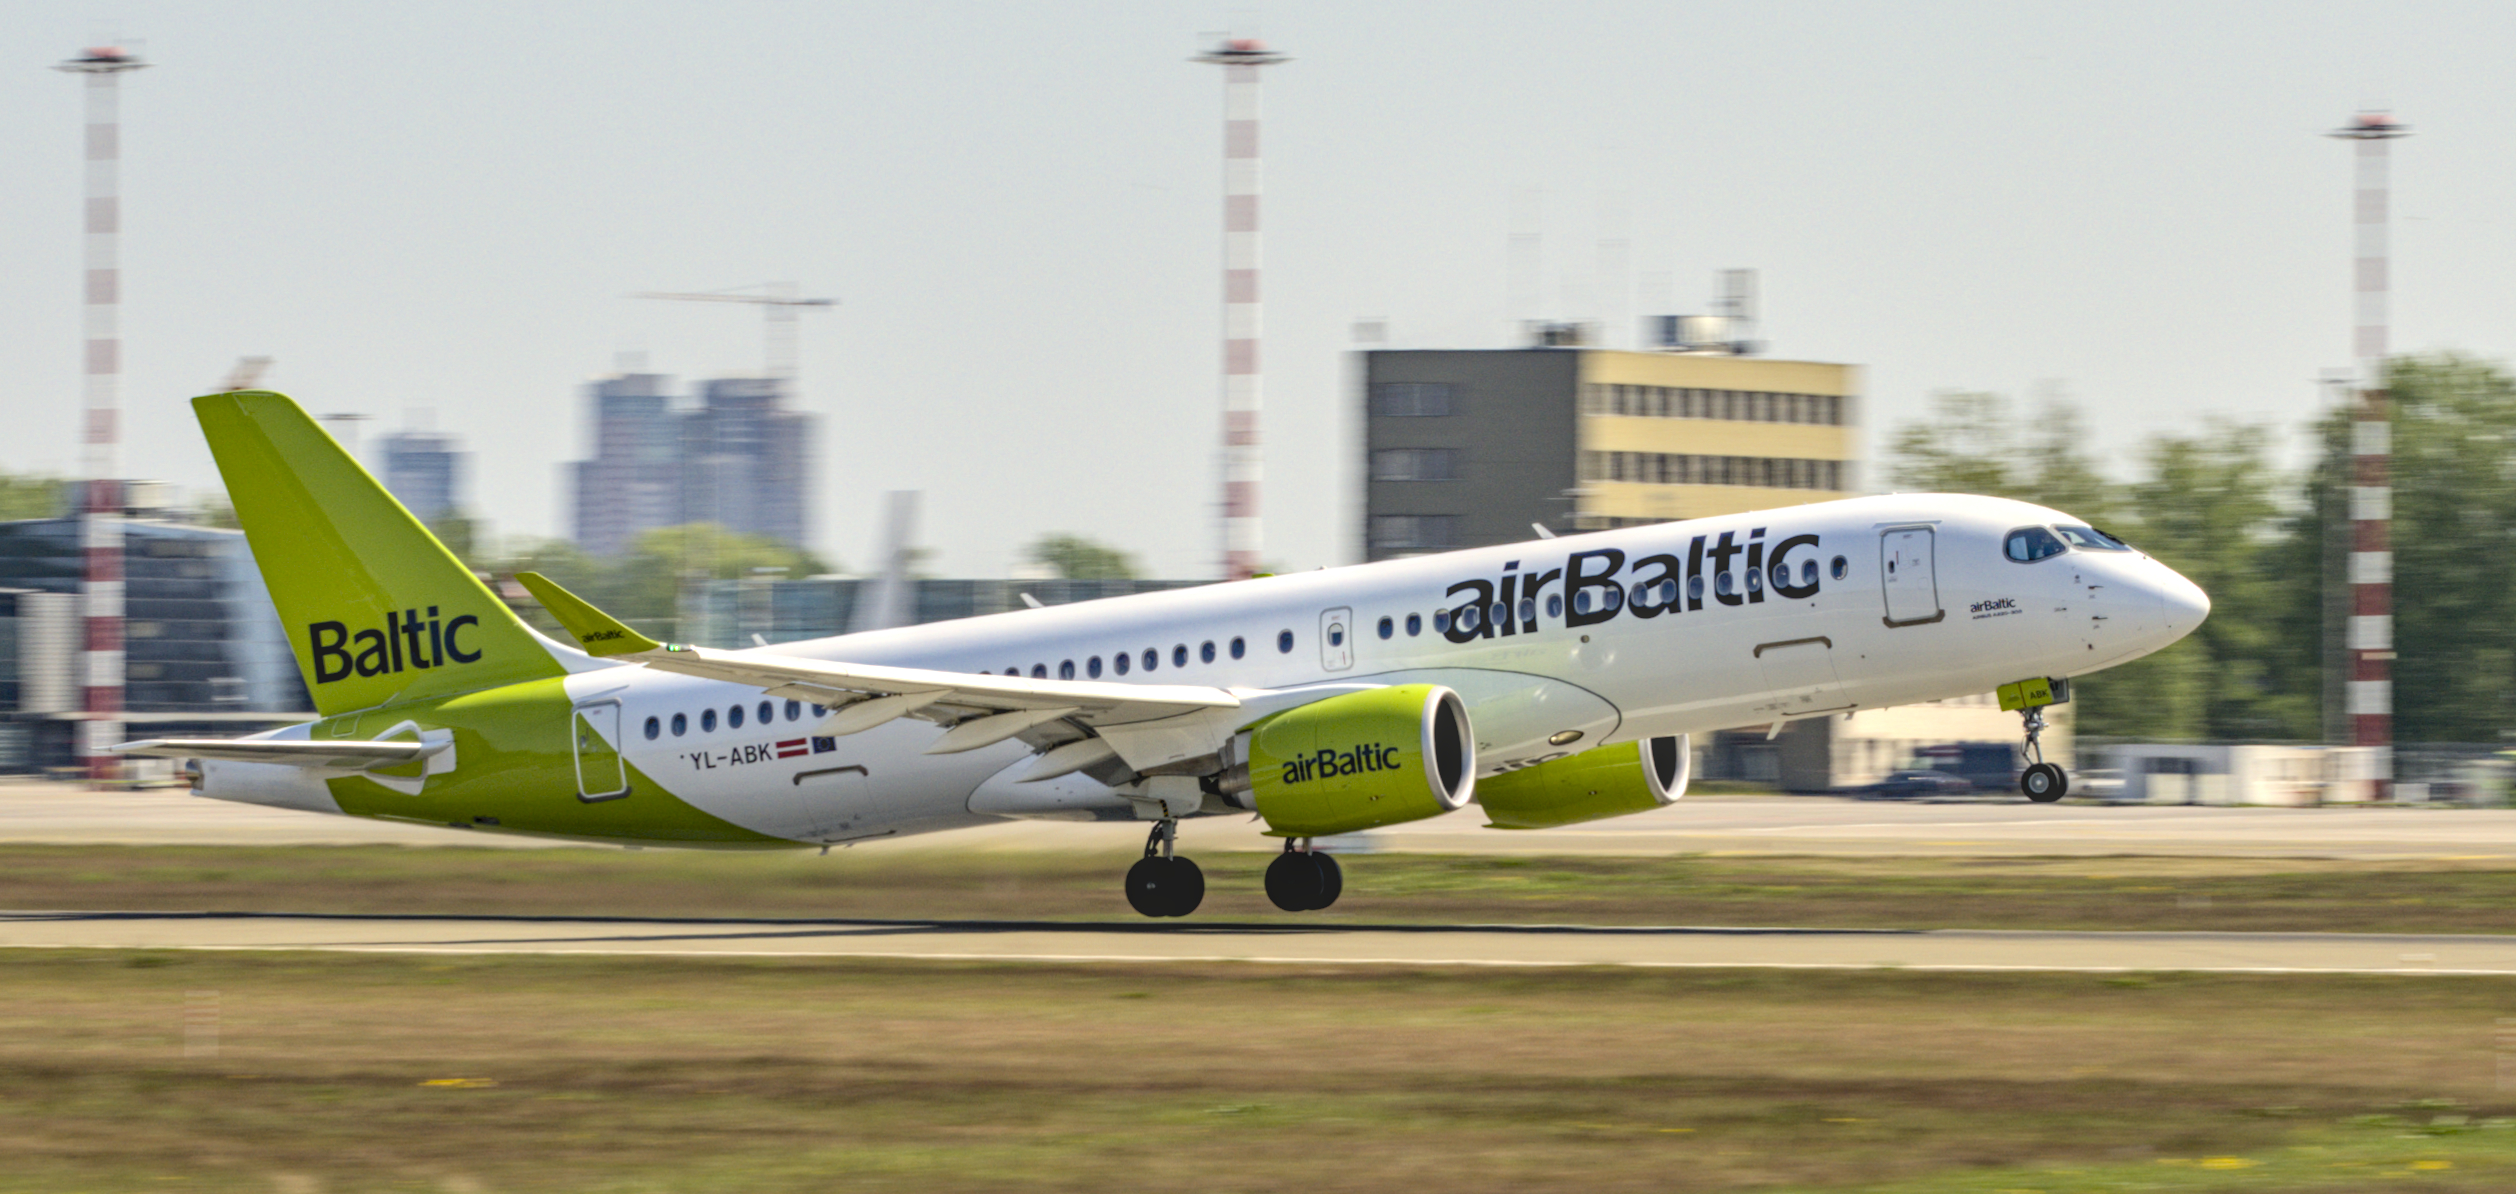 Air Baltic Airbus A220 YL-ABK